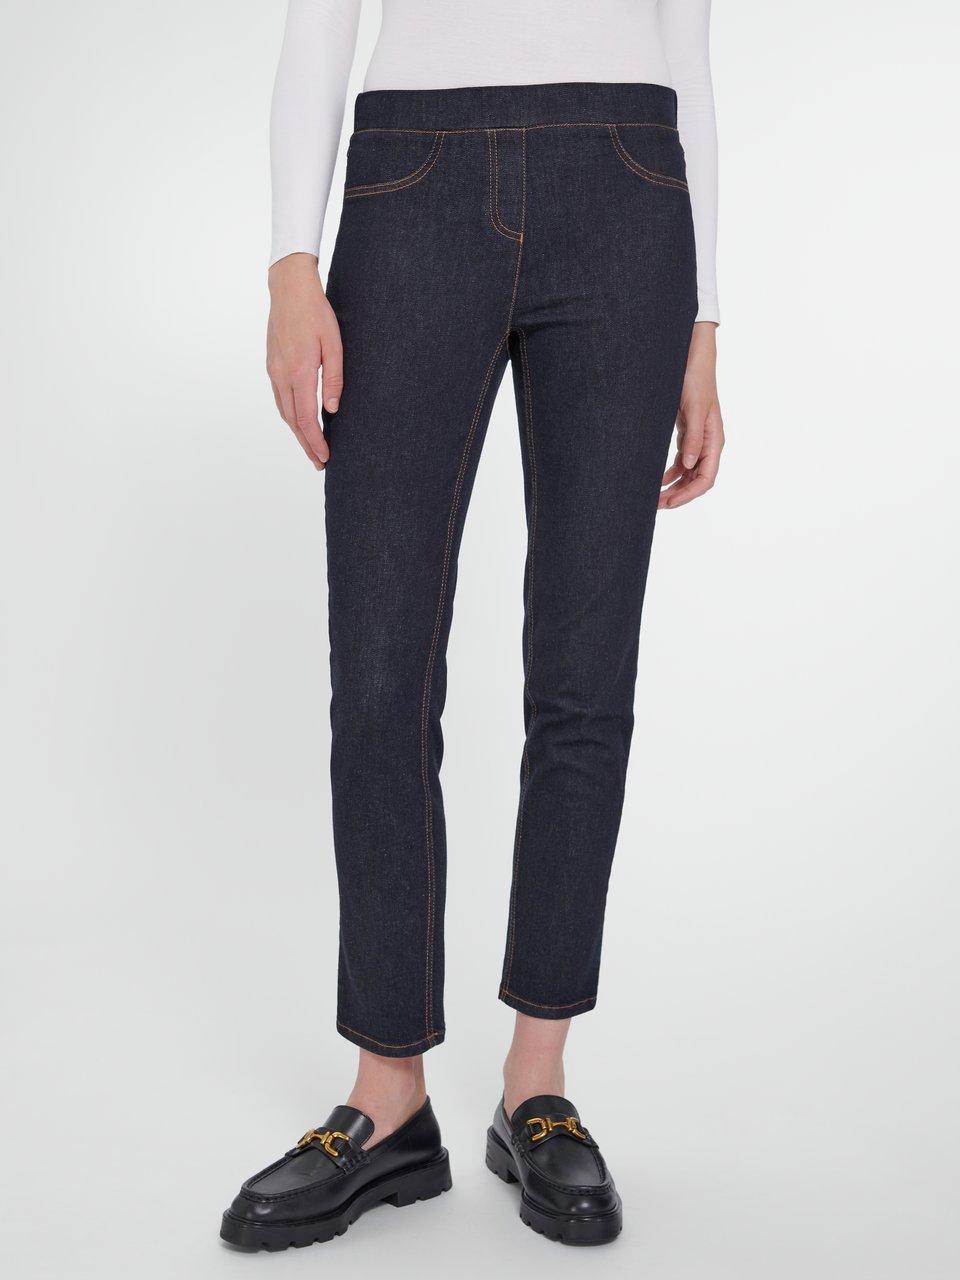 Damen Jeans in Größe 48 kaufen Peter Hahn online bei